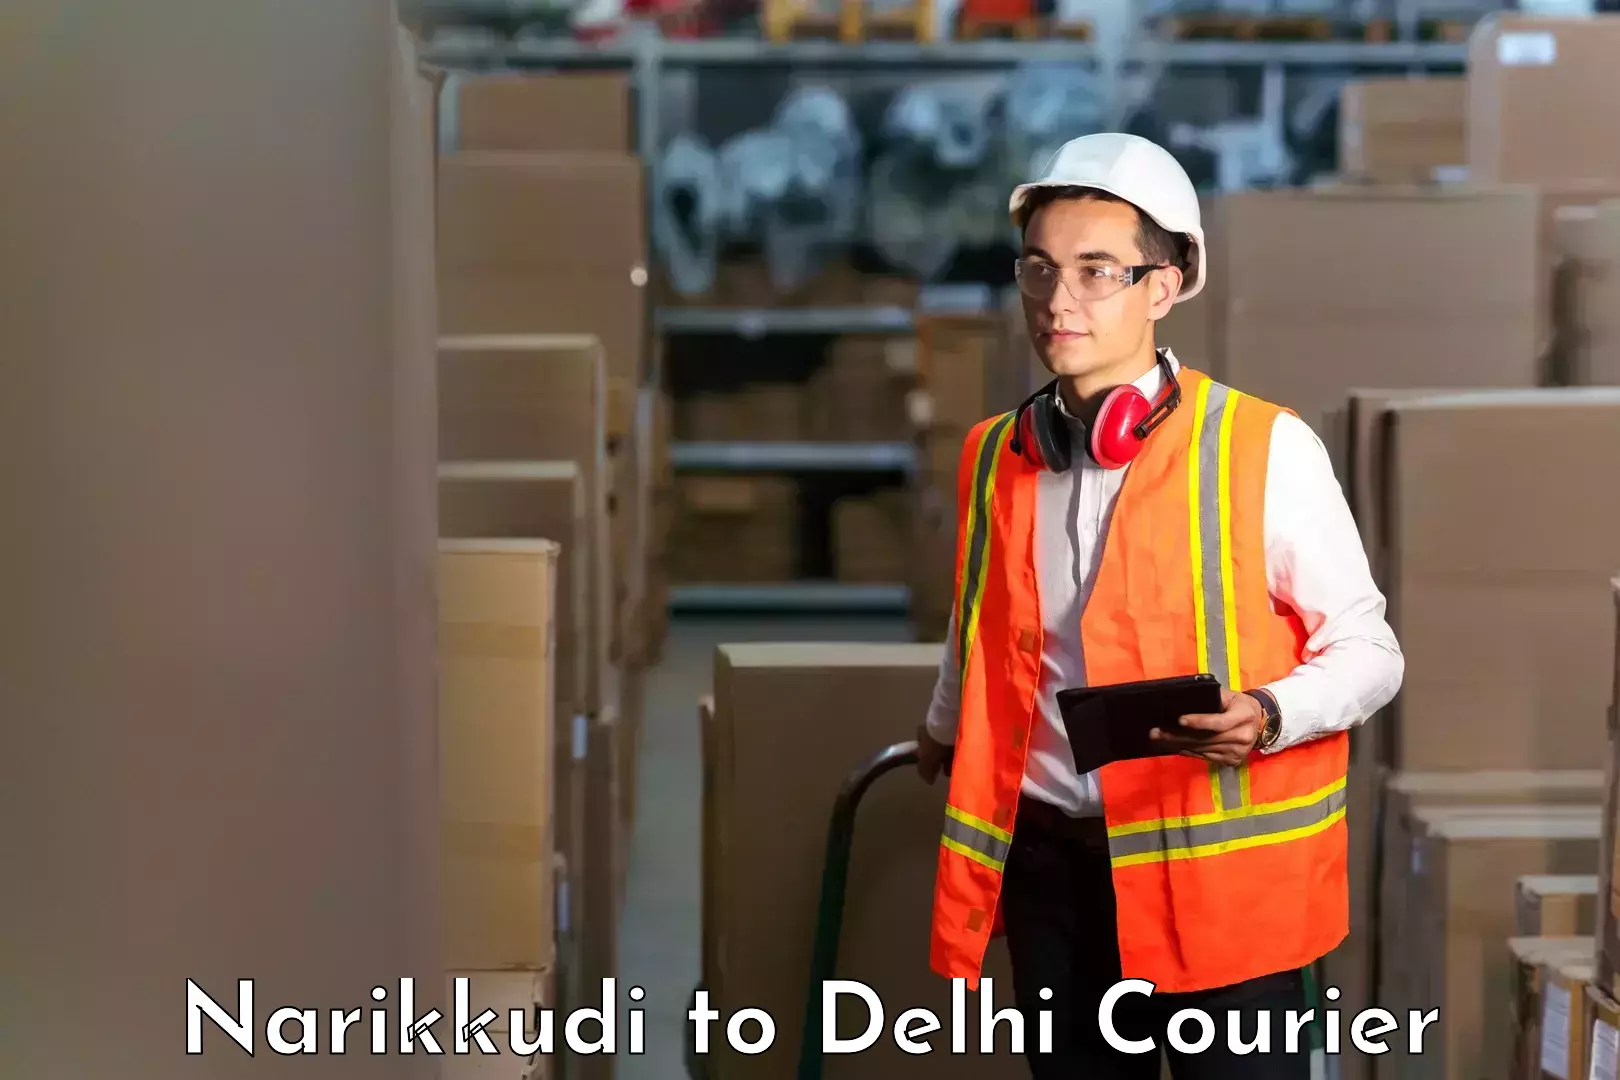 Comprehensive freight services Narikkudi to Jamia Millia Islamia New Delhi